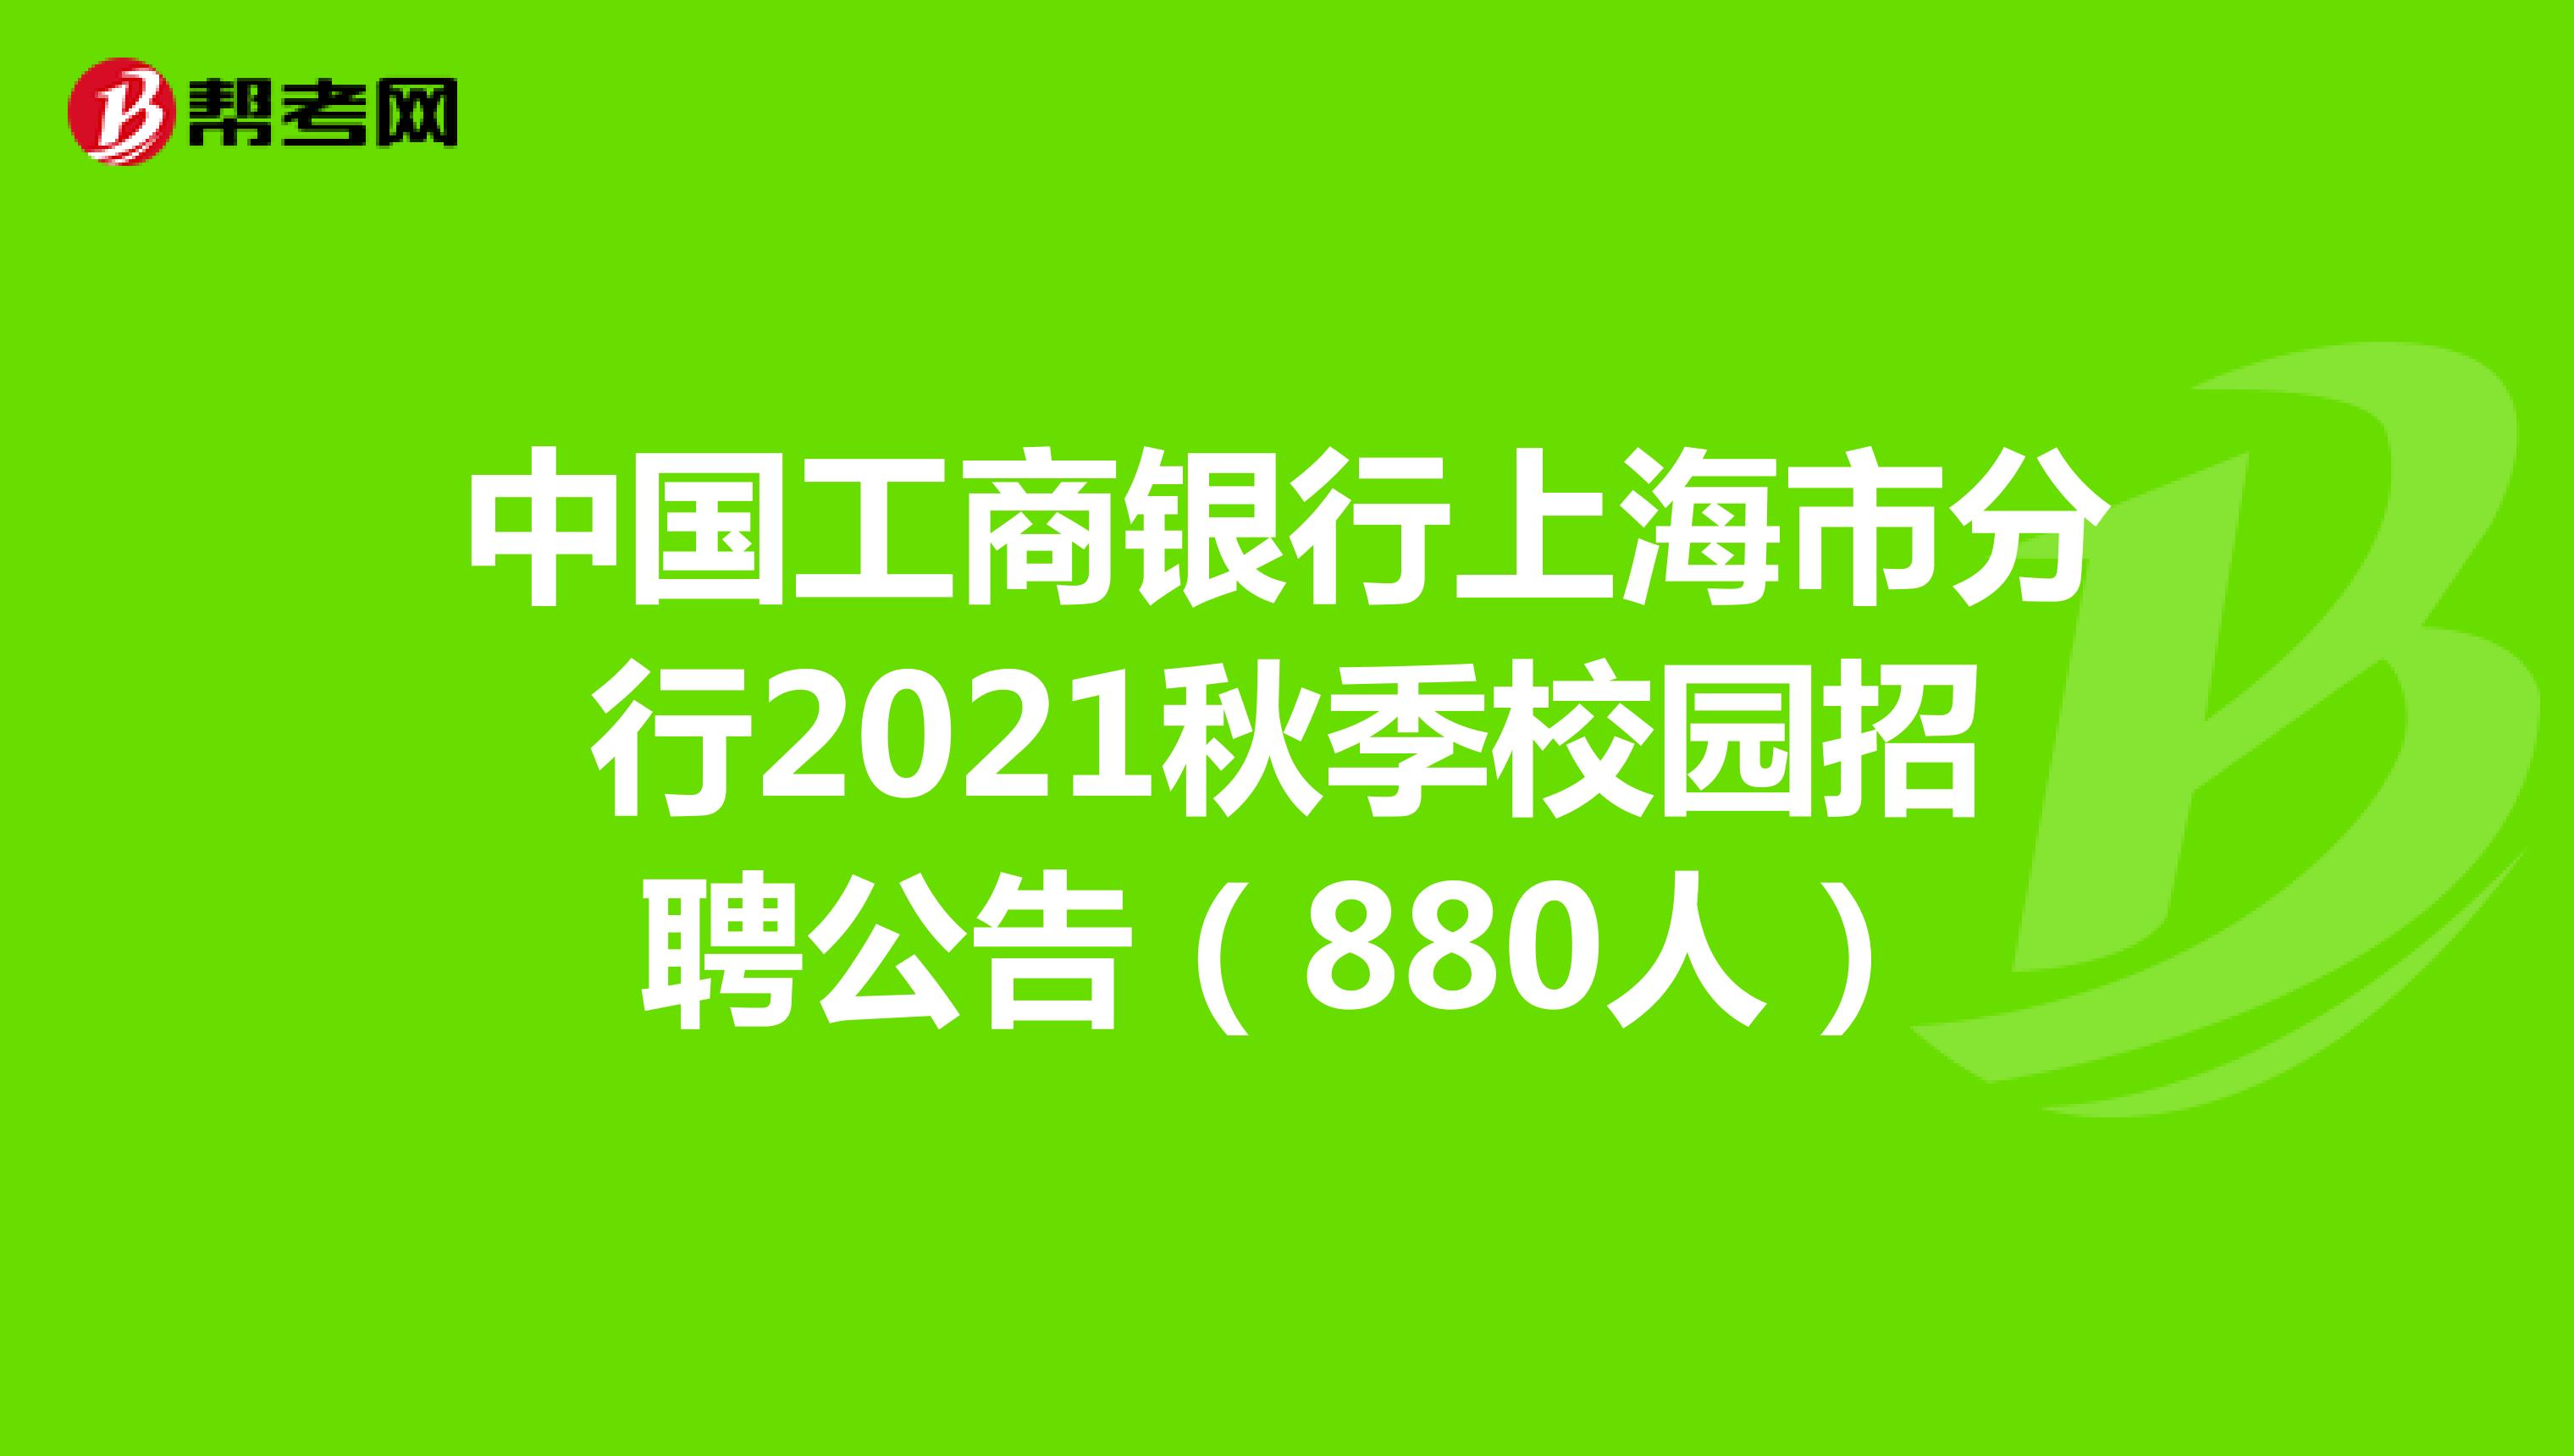 中国工商银行上海市分行2021秋季校园招聘公告（880人）